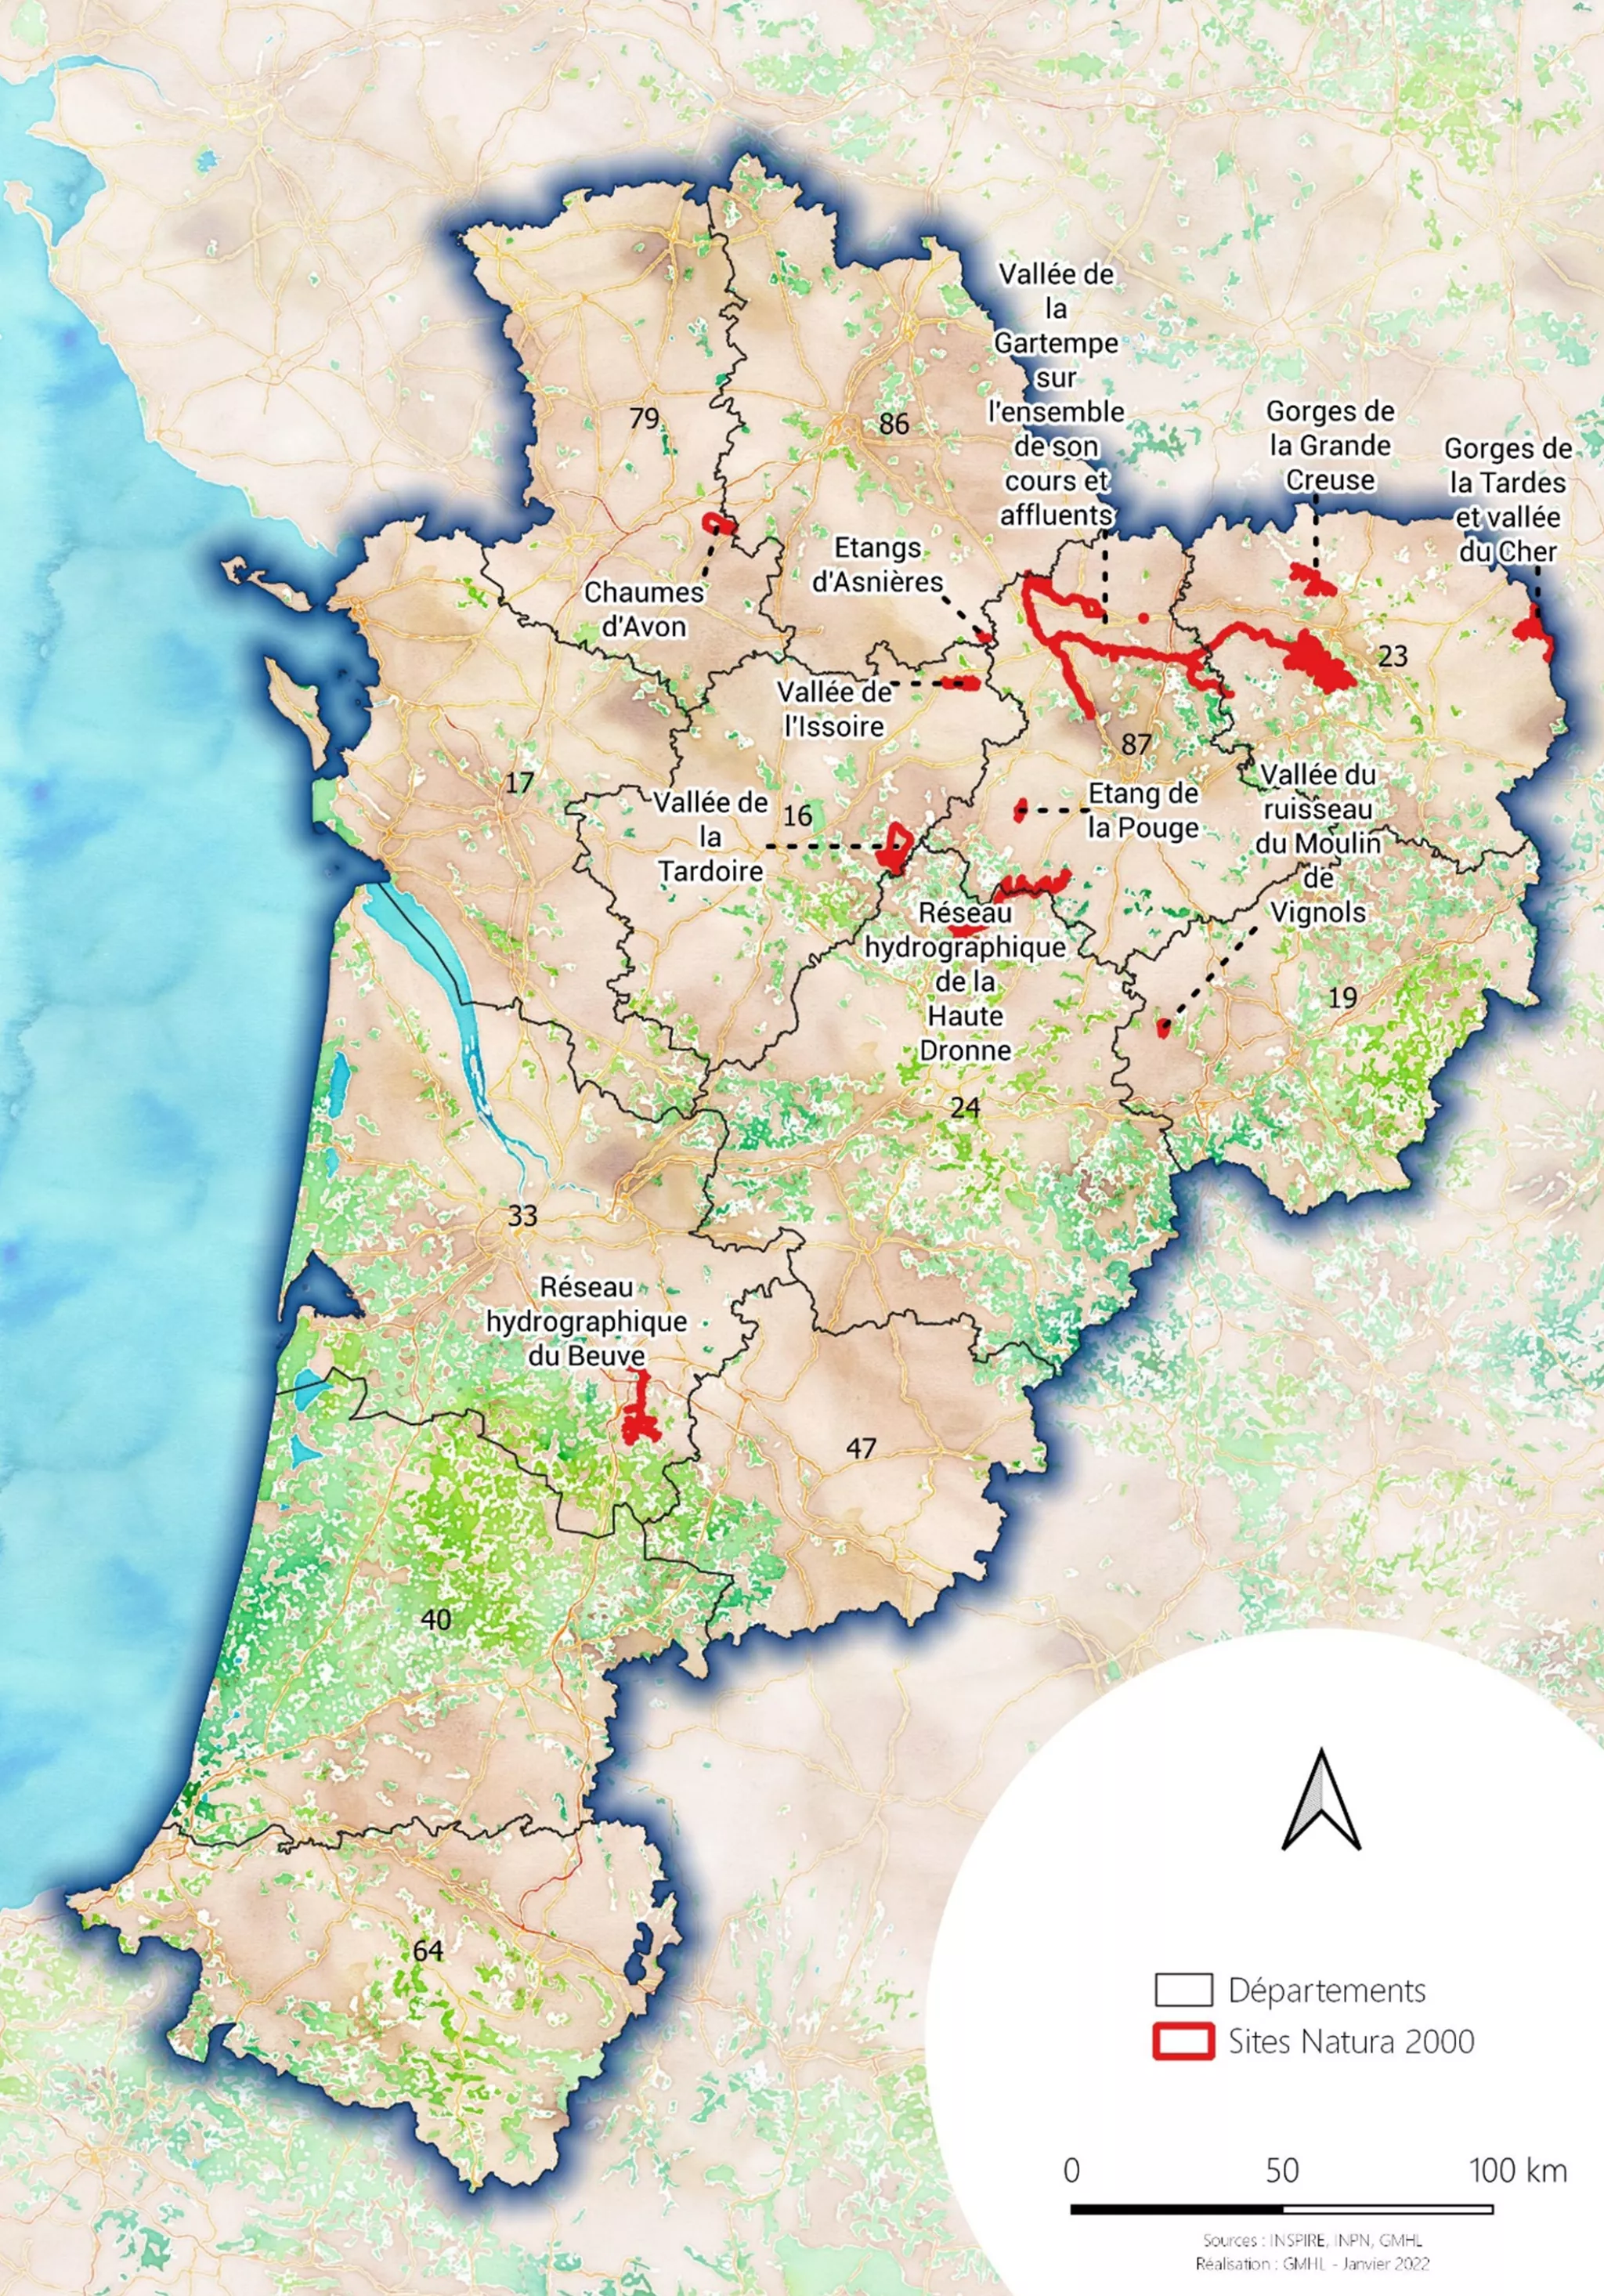 Localisation des sites Natura 2000 étudiés